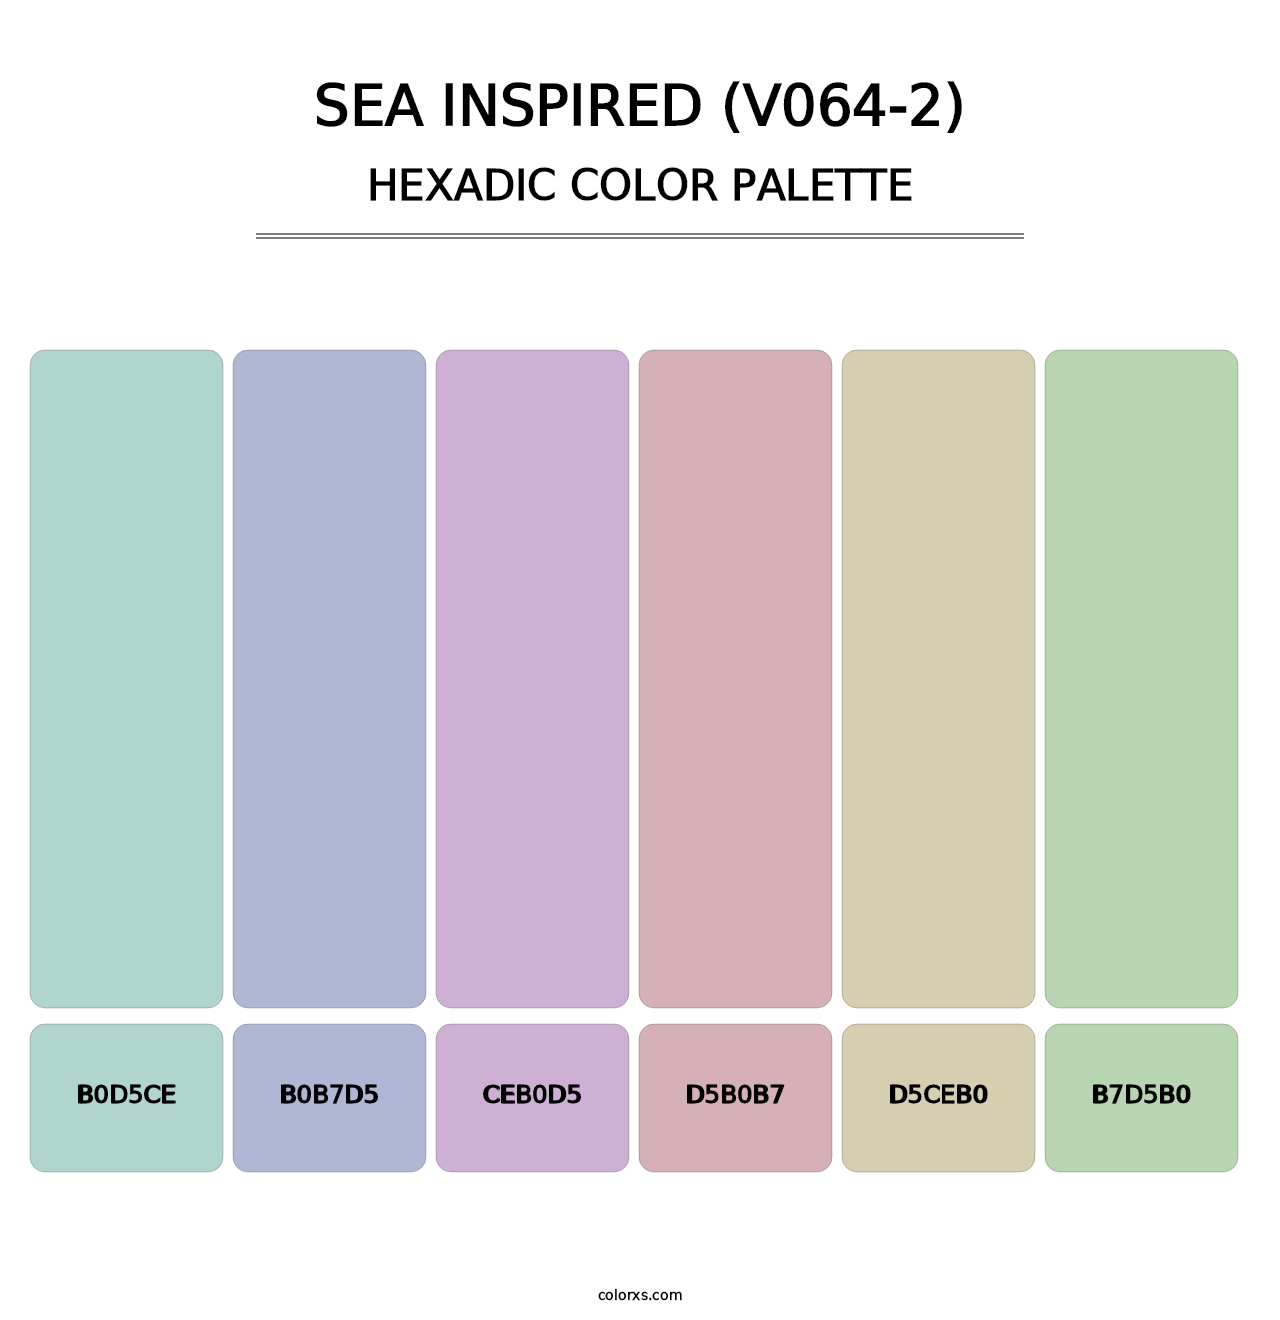 Sea Inspired (V064-2) - Hexadic Color Palette